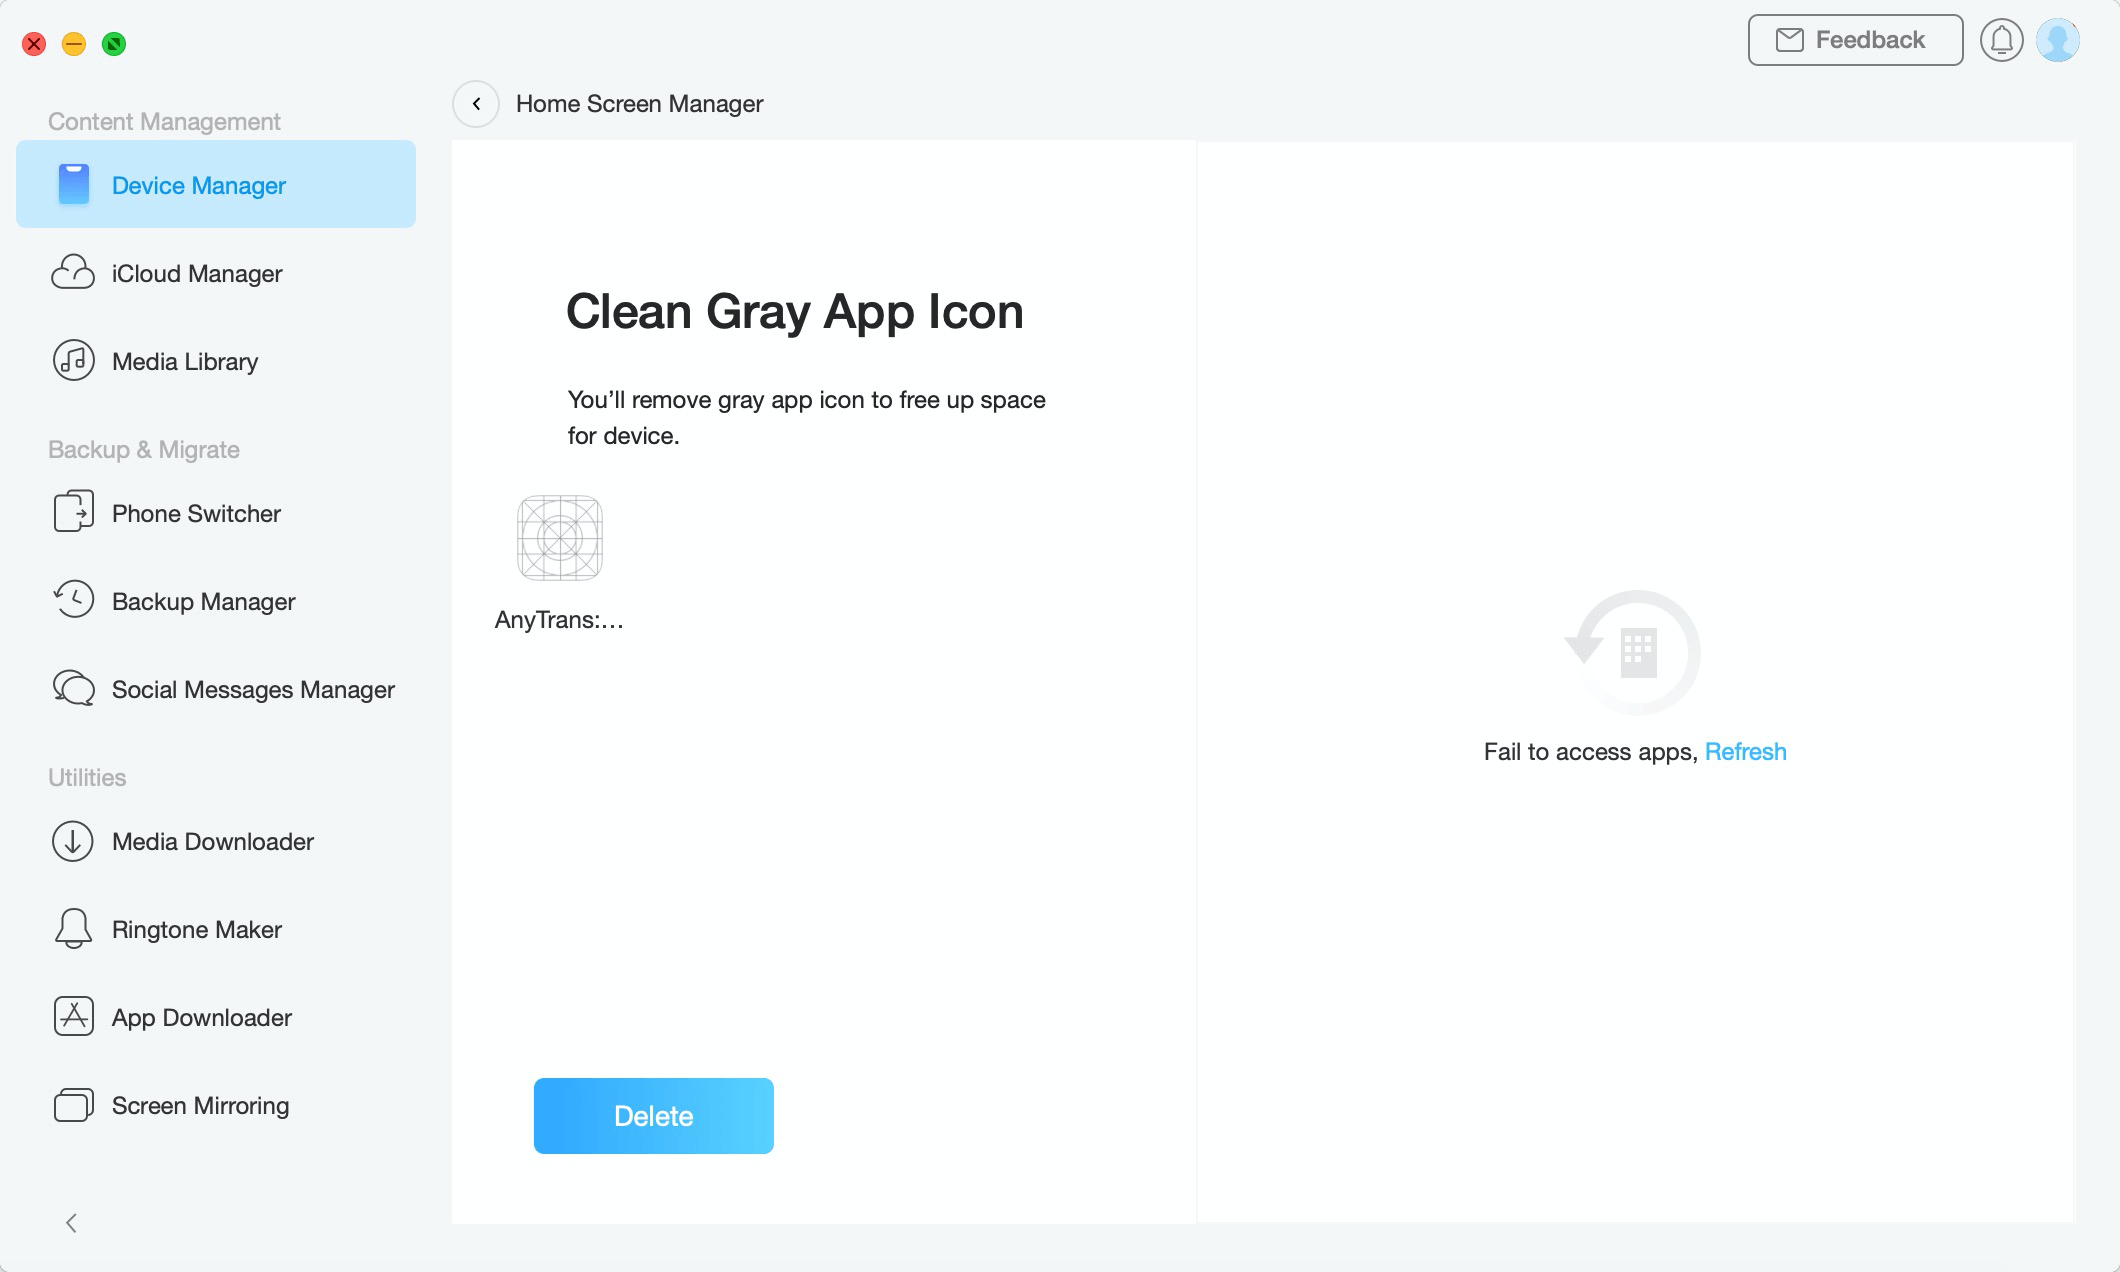 Recognizing Gray App Icon